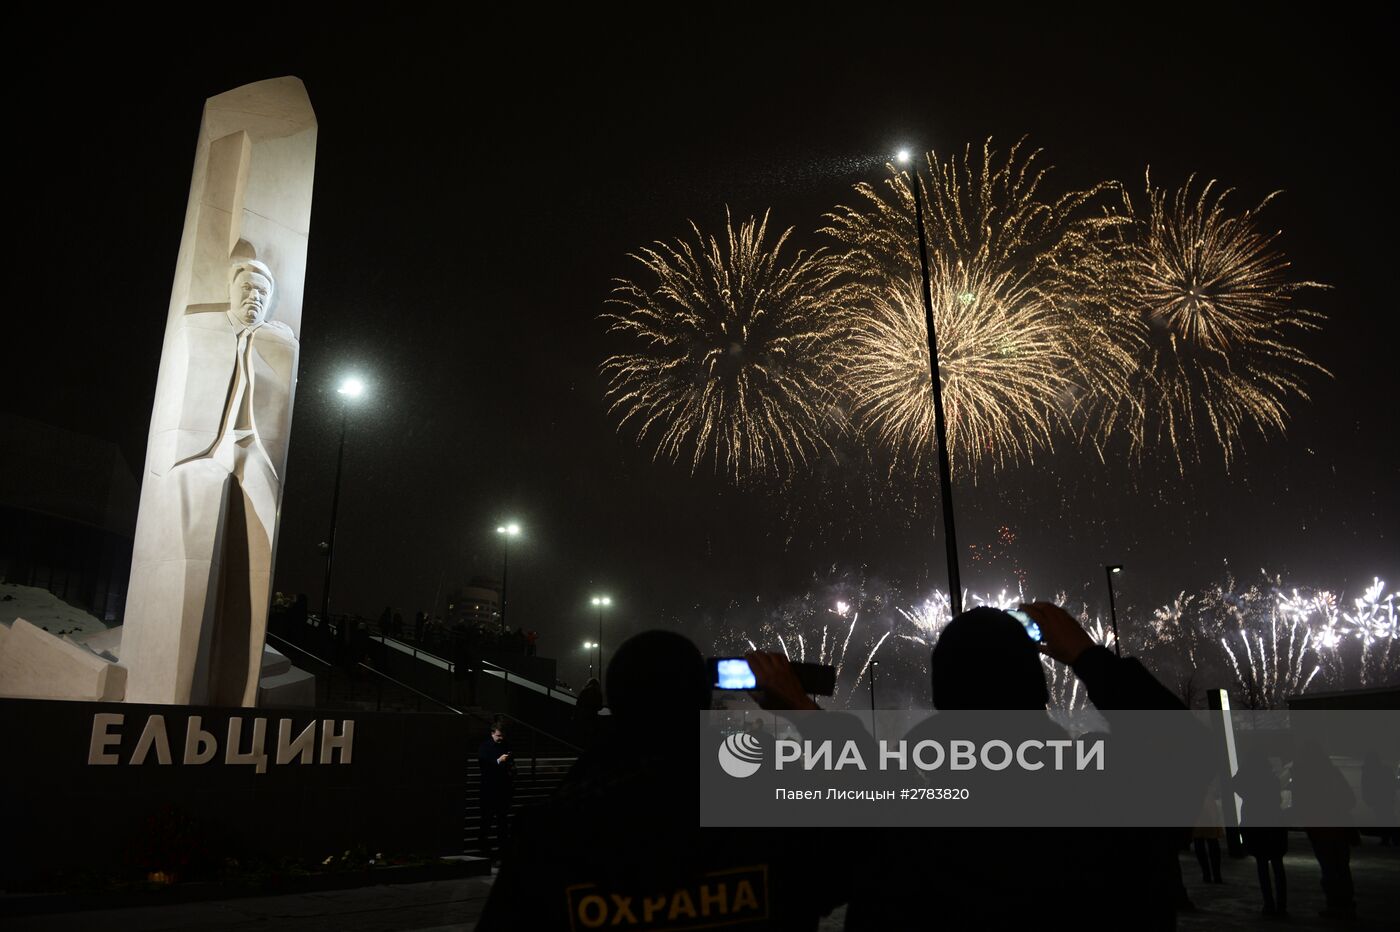 Мероприятия, приуроченные к 85-летию со дня рождения первого российского президента Б. Ельцина